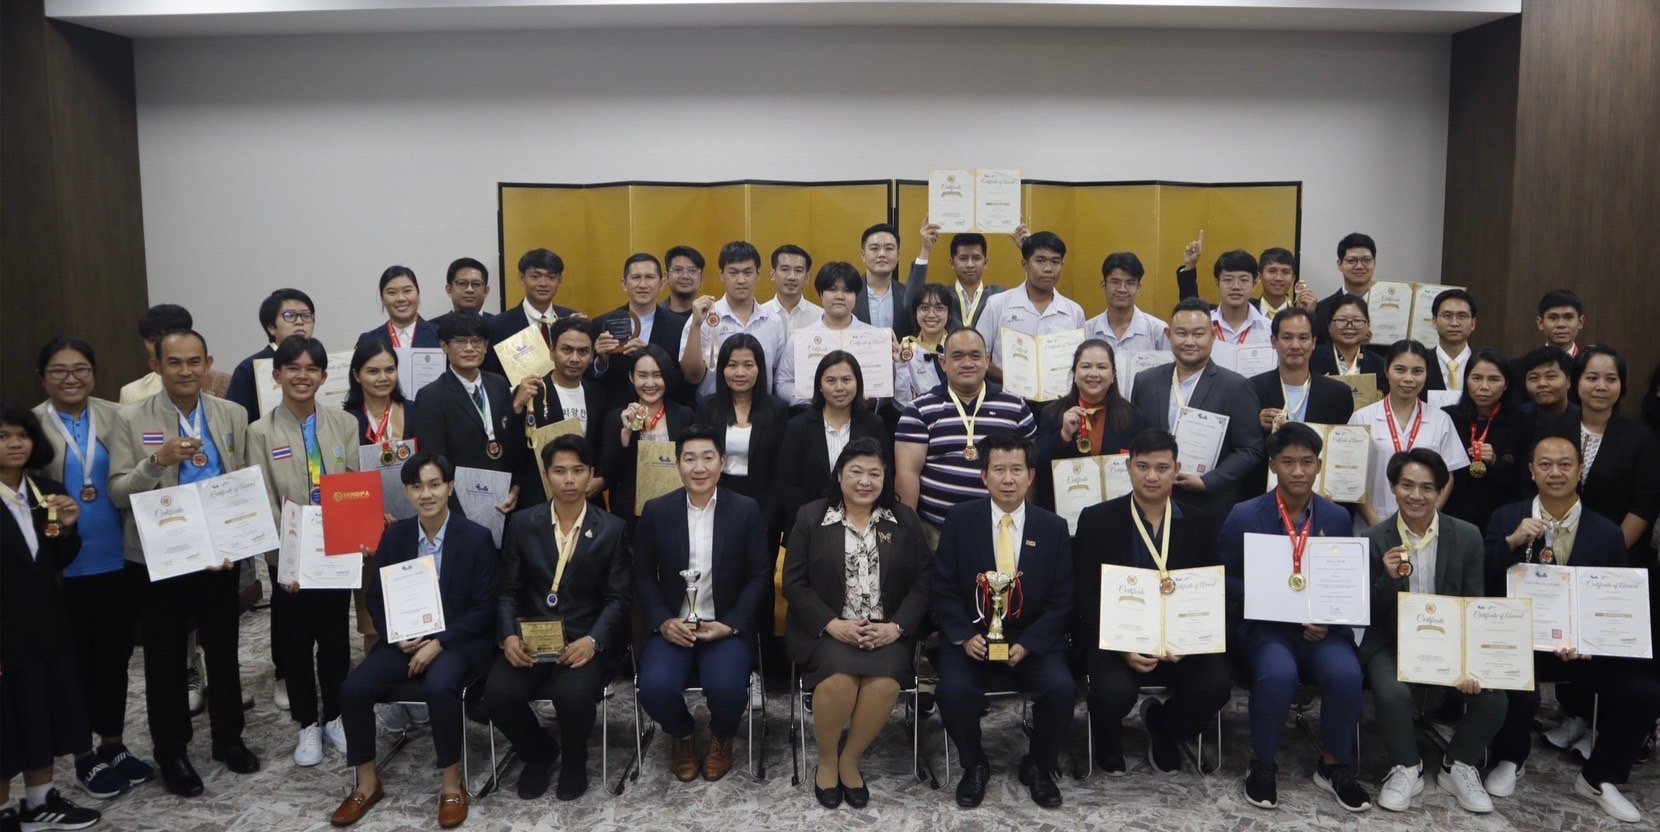 ทีมนักประดิษฐ์นักวิจัยไทย คว้ารางวัล Big Award และเหรียญรางวัลจากเวที Japan Design, Idea and Invention Expo ณ กรุงโตเกียว ประเทศญี่ปุ่น